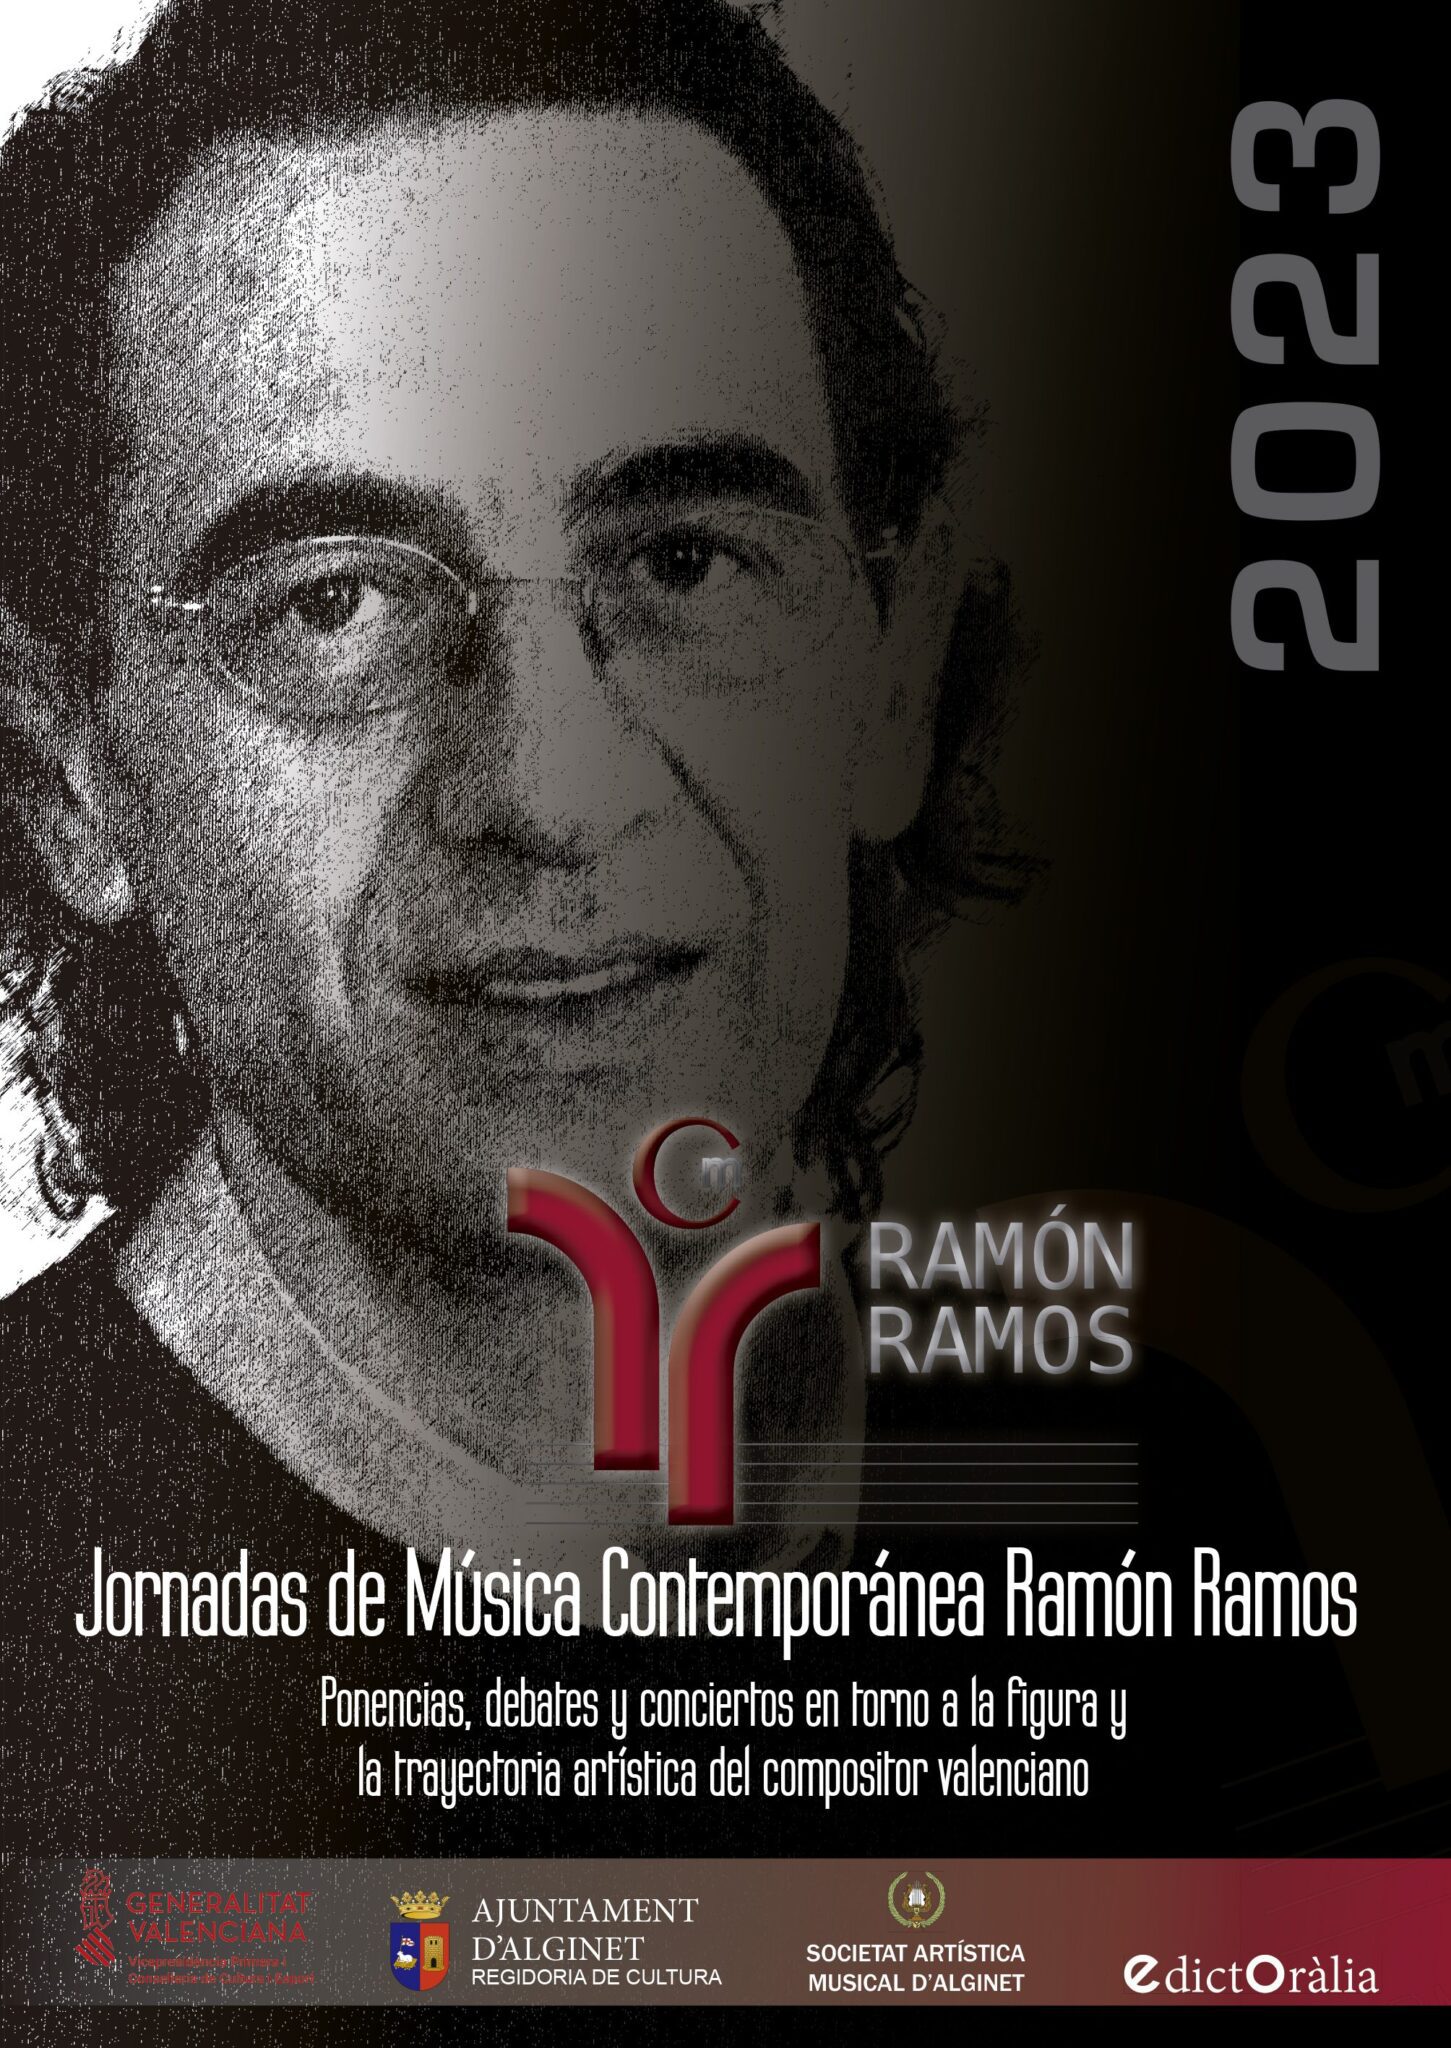 00 Libro Jornadas Ramon Ramos. Portada 1 scaled